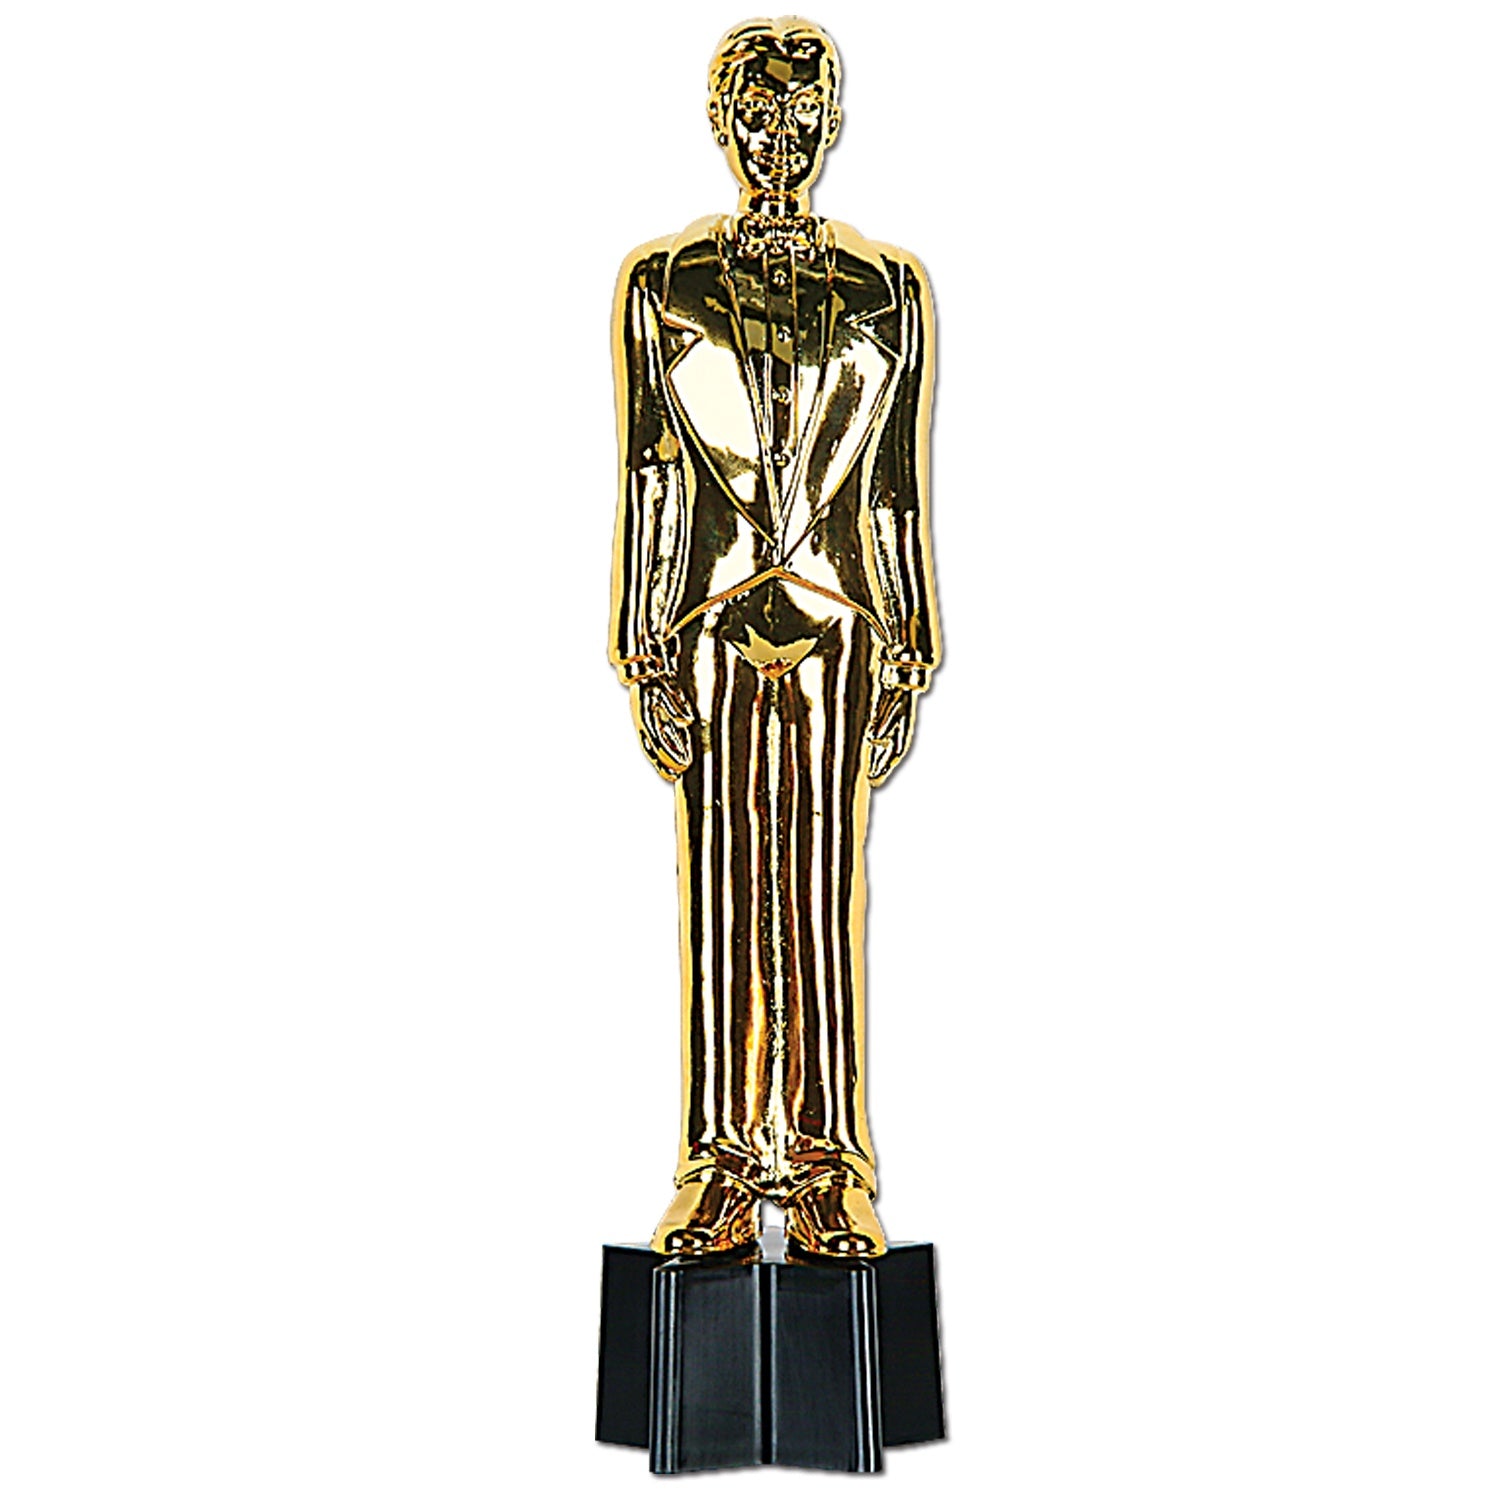 Awards Night Male Statuette Trophy